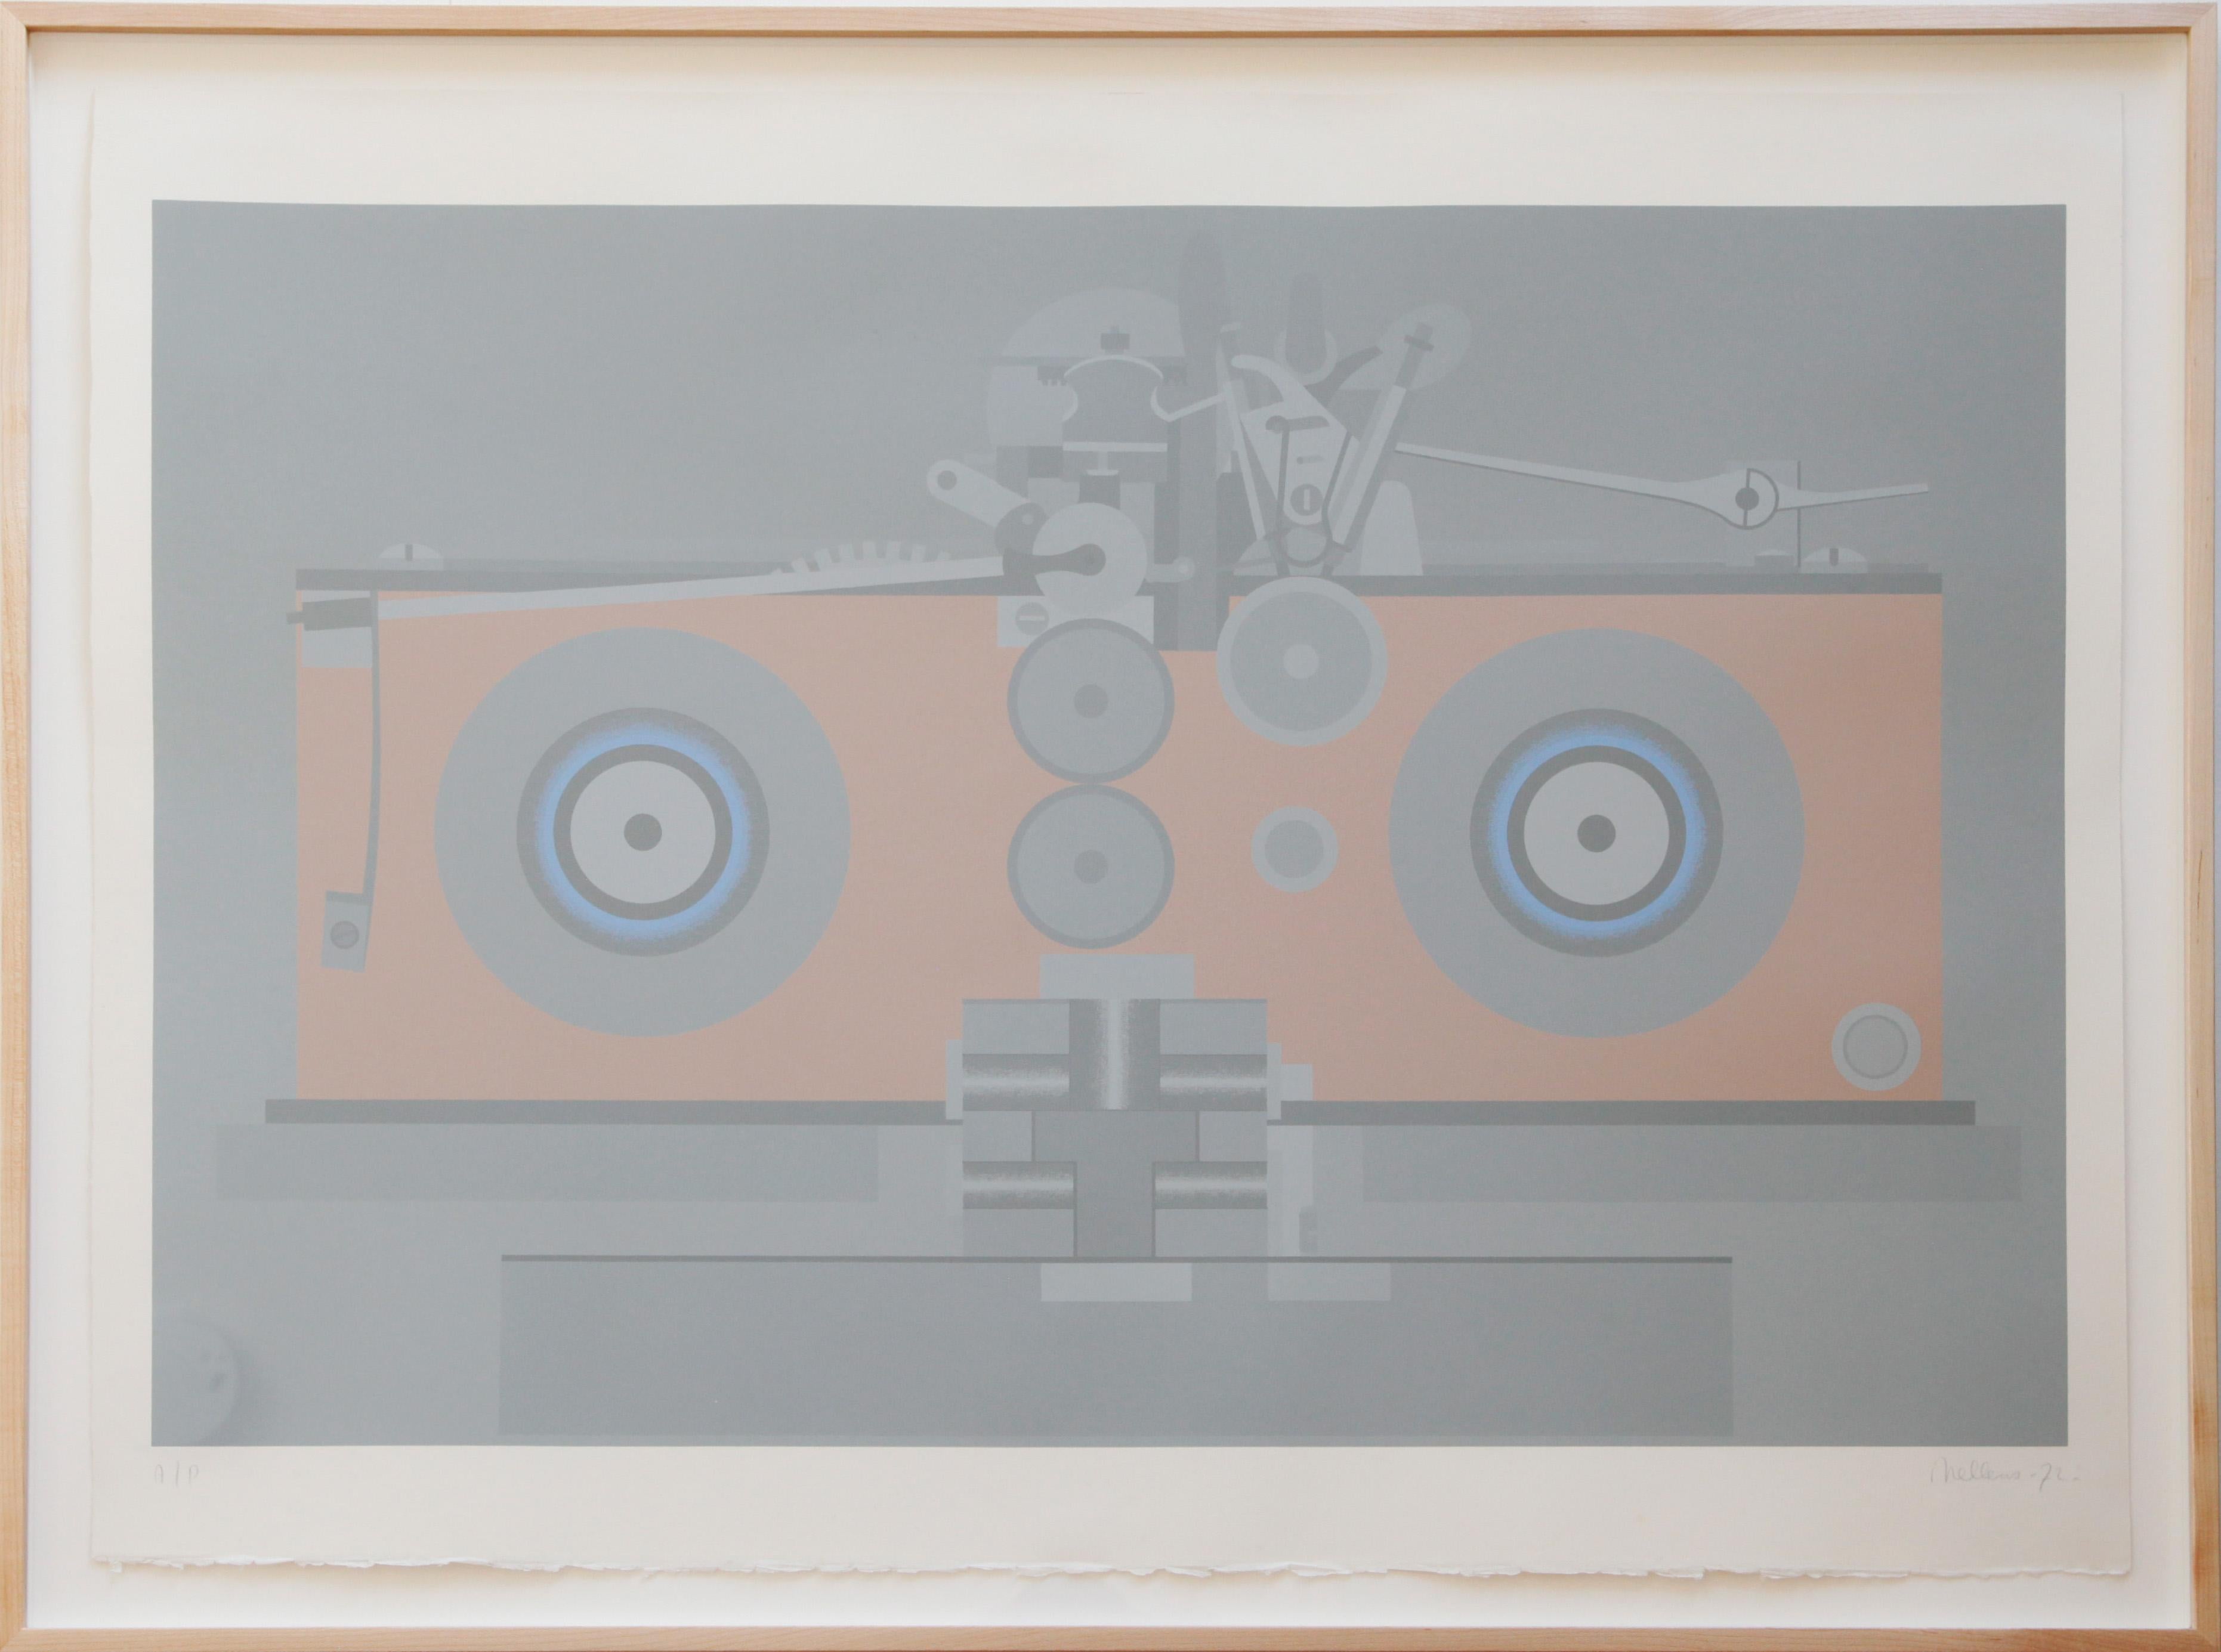 Künstler: Roger Nellens (geboren 1937)

Teil von: Maschine

Medium: Siebdruck auf Papier

Collection'S: TATE

-

Über den Künstler: 
Roger Nellens ist ein belgischer Autodidakt, der sich für die Überschneidung und den Kontrast zwischen Maschinen und